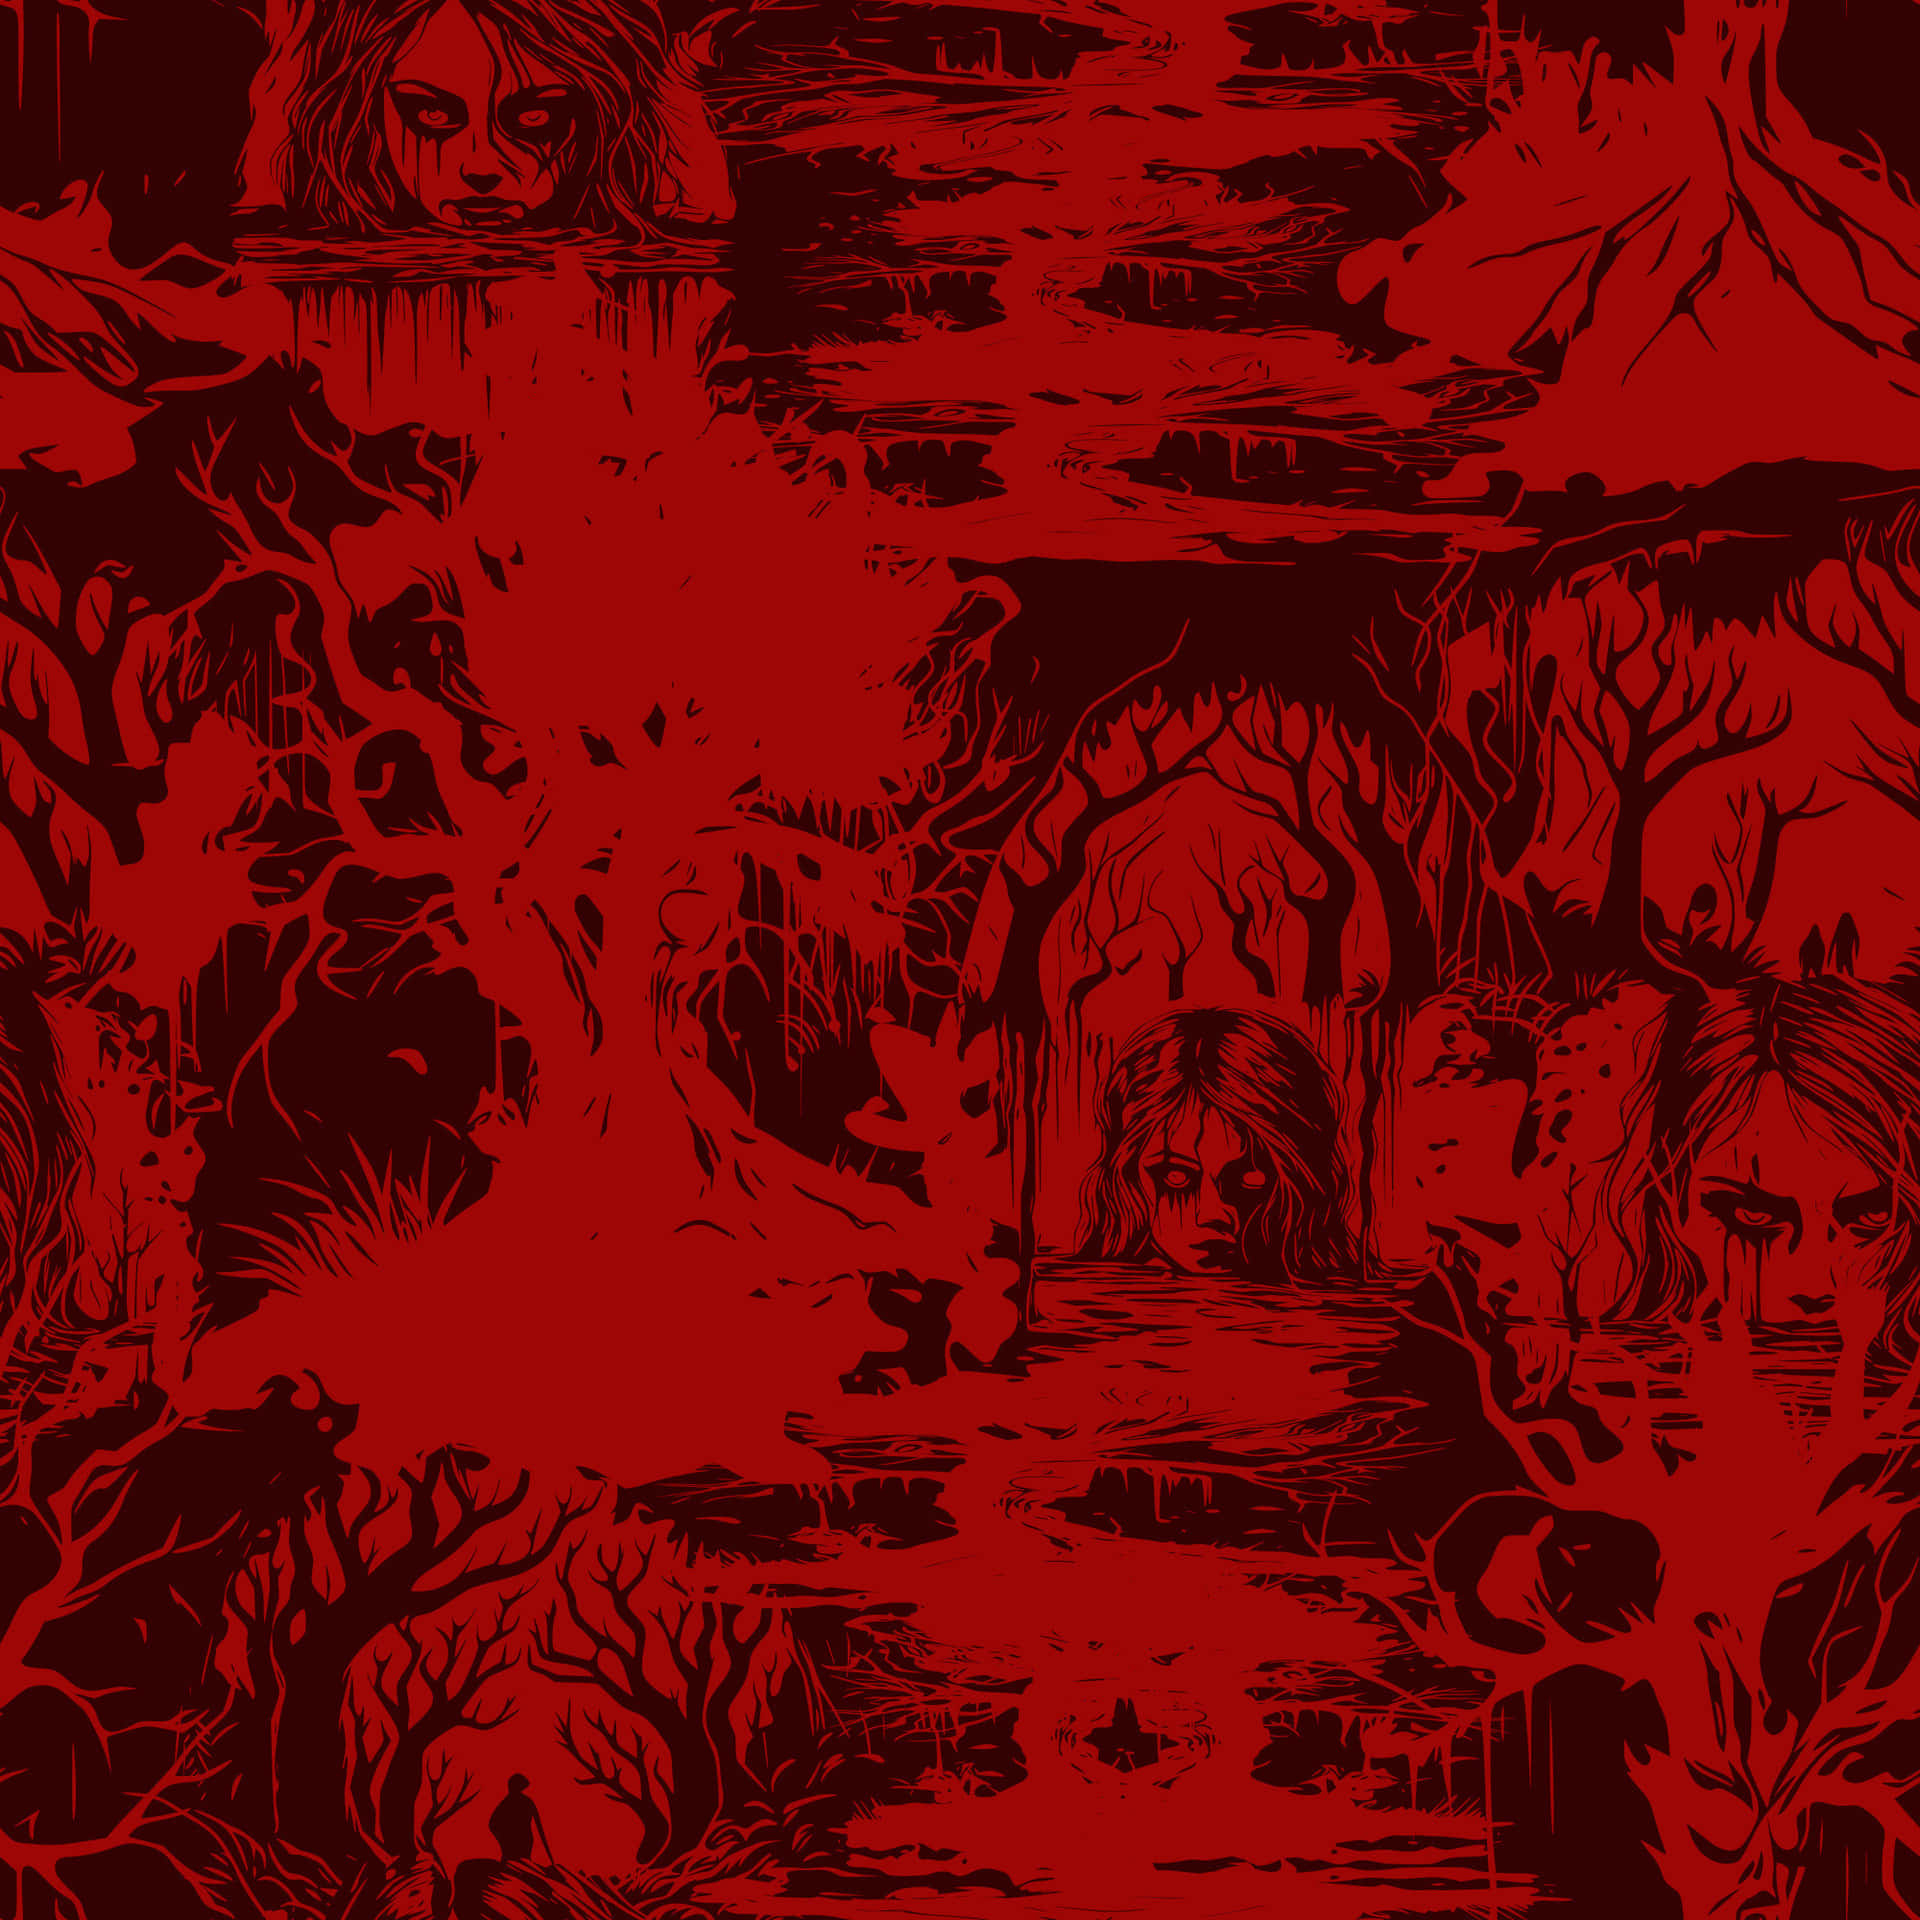 Red Nightmare Illustration Wallpaper